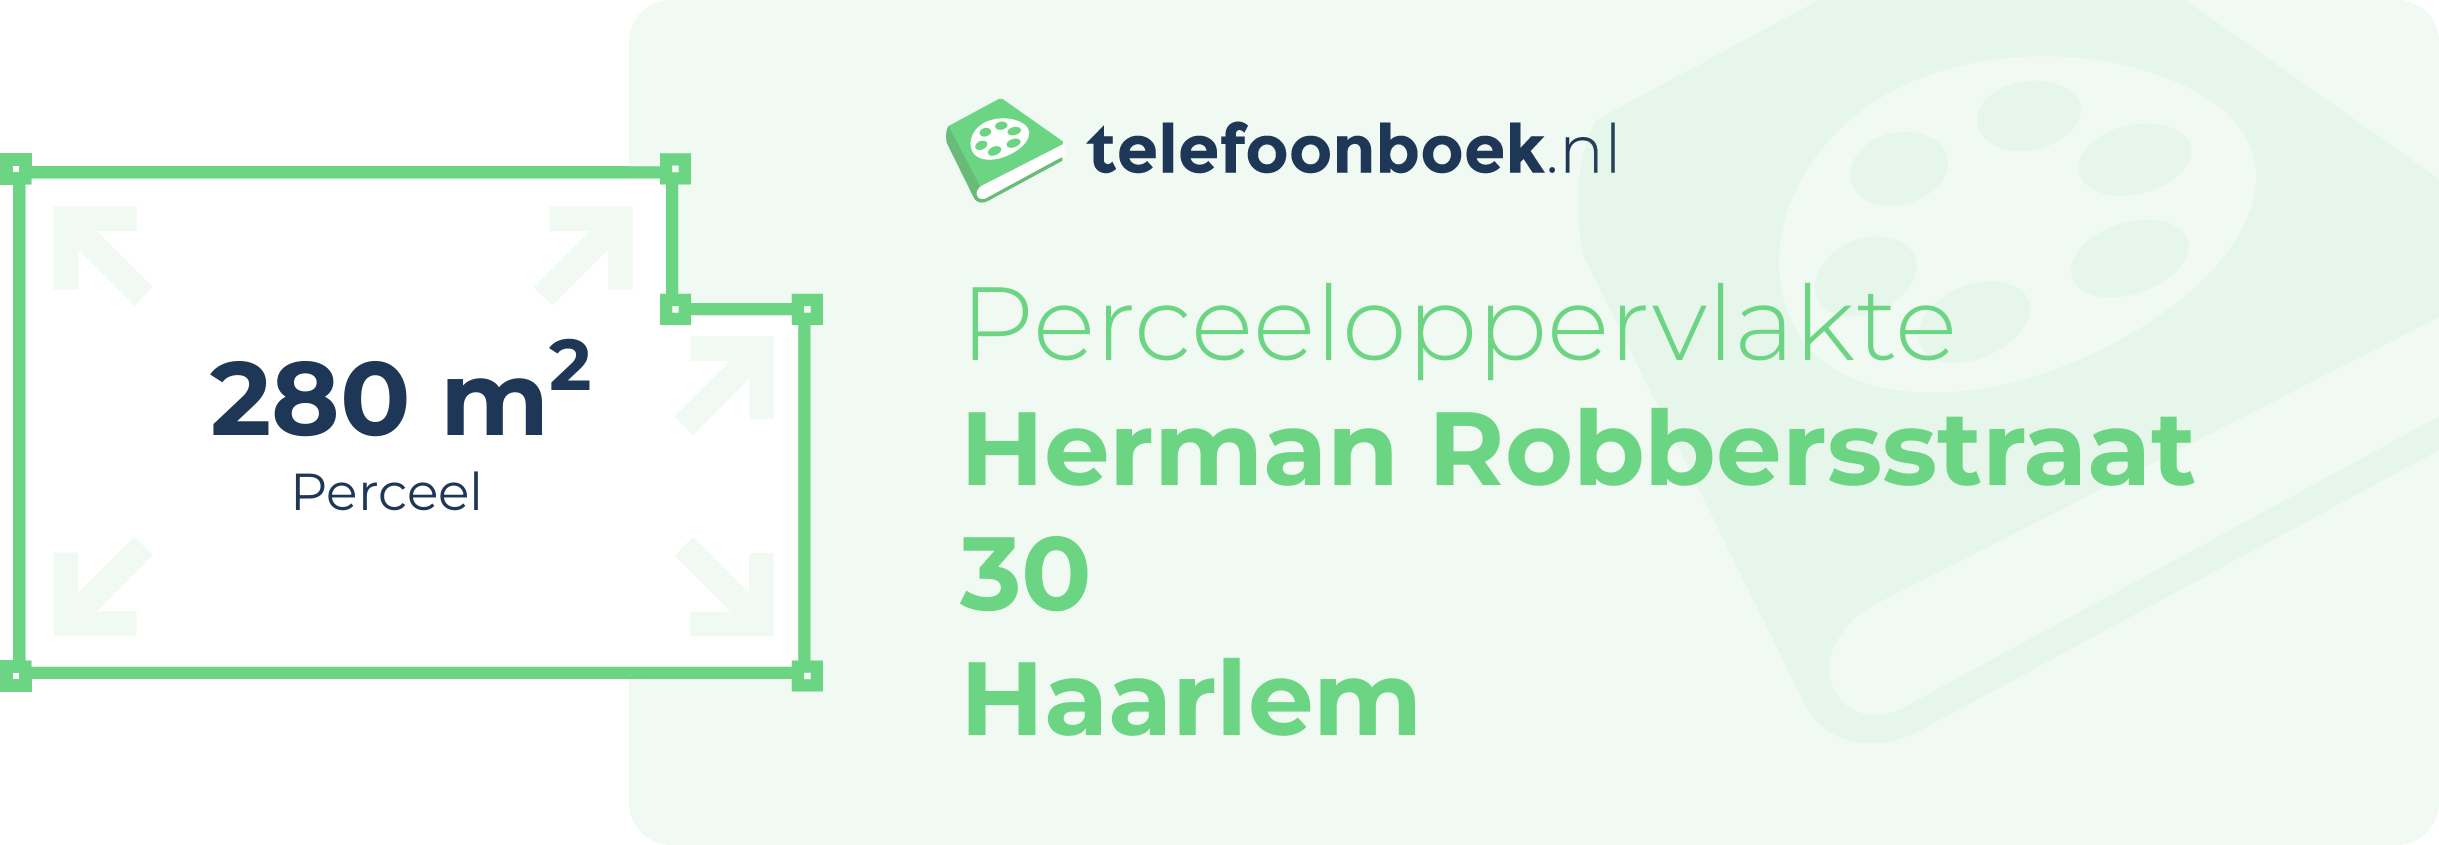 Perceeloppervlakte Herman Robbersstraat 30 Haarlem